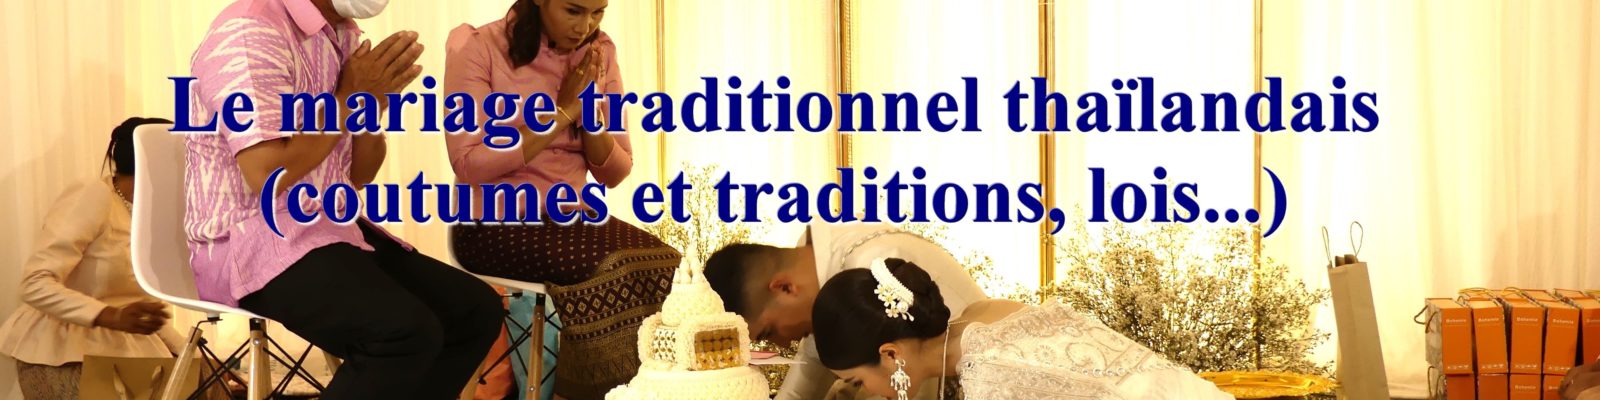 Le mariage traditionnel thaïlandais, coutumes et traditions